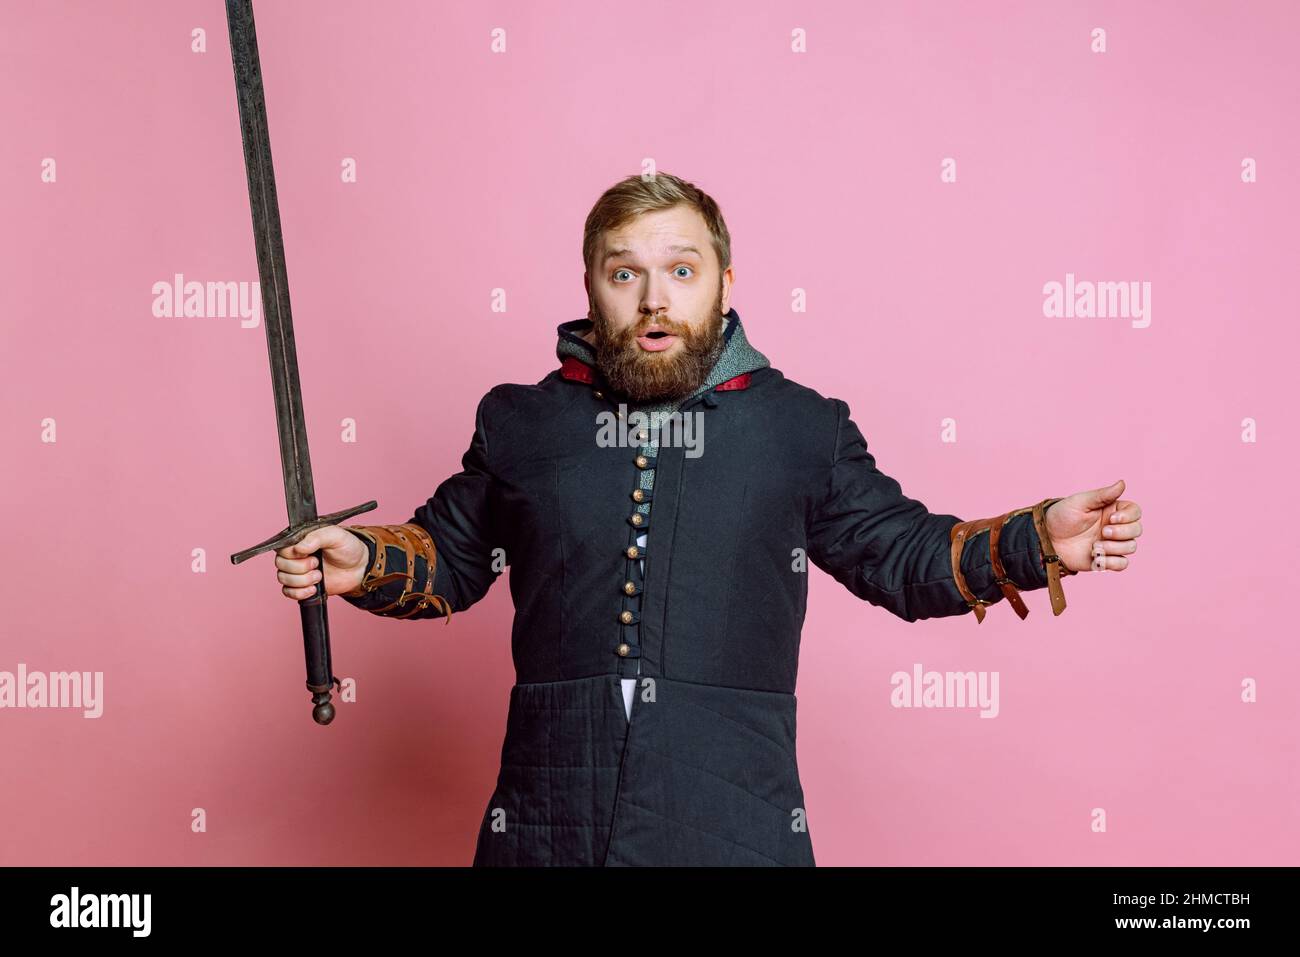 Ein junger schockierter Mann, ein mittelalterlicher Krieger oder Bogenschütze mit Schwert, der mit offenem Mund auf einem rosafarbenen Studiohintergrund die Kamera ansah. Vergleich von Stockfoto